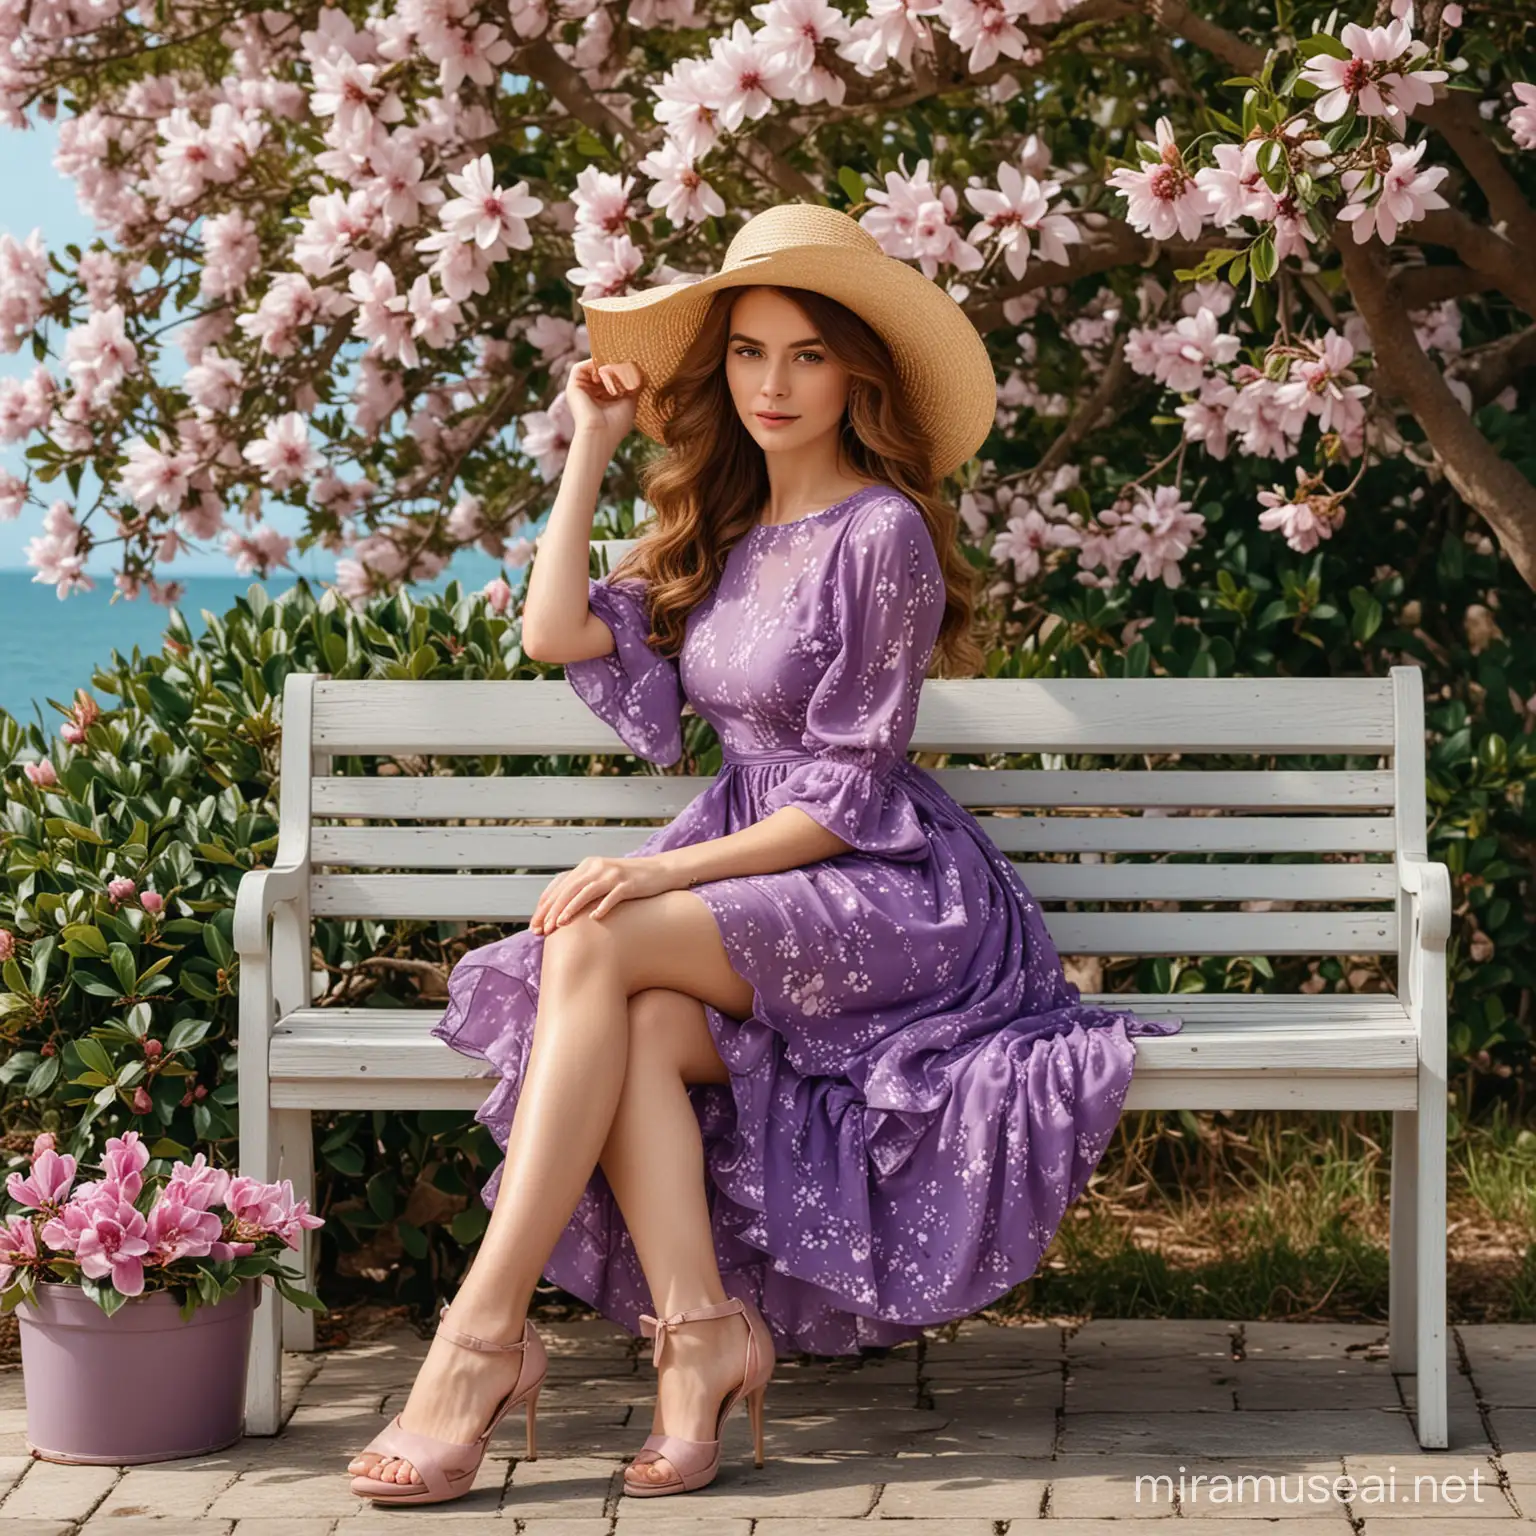 Красивая девушка с каштановыми пышными волосами в красивом фиолетовом платье в изящной шляпке и туфельках отдыхает на скамейке под кустом цветущей магнолии у моря.